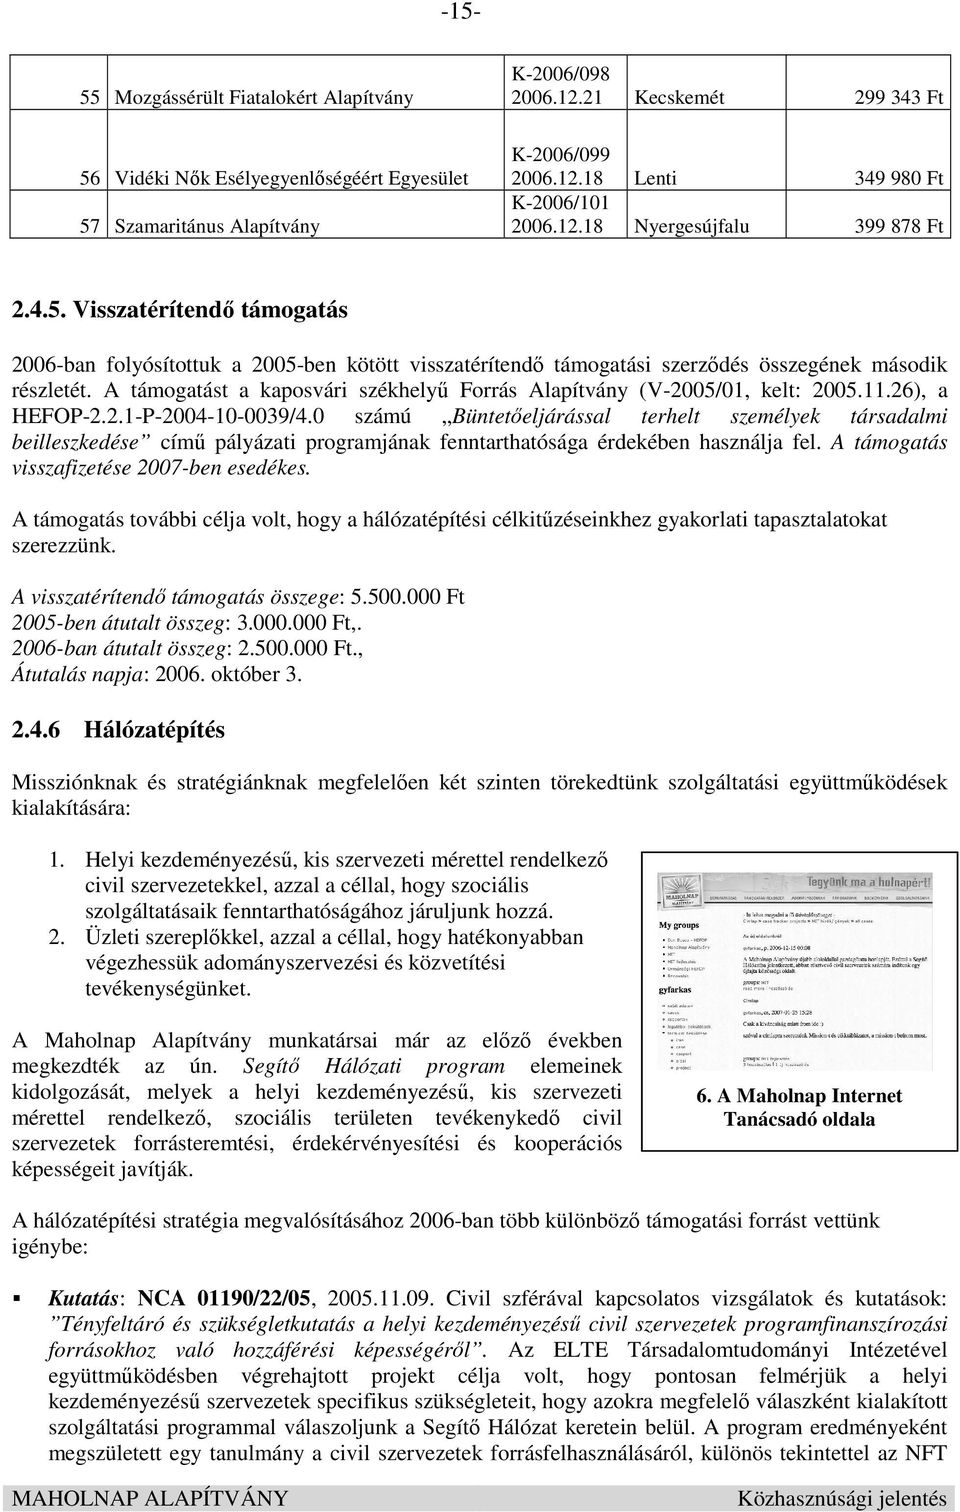 A támogatást a kaposvári székhelyő Forrás Alapítvány (V-2005/01, kelt: 2005.11.26), a HEFOP-2.2.1-P-2004-10-0039/4.